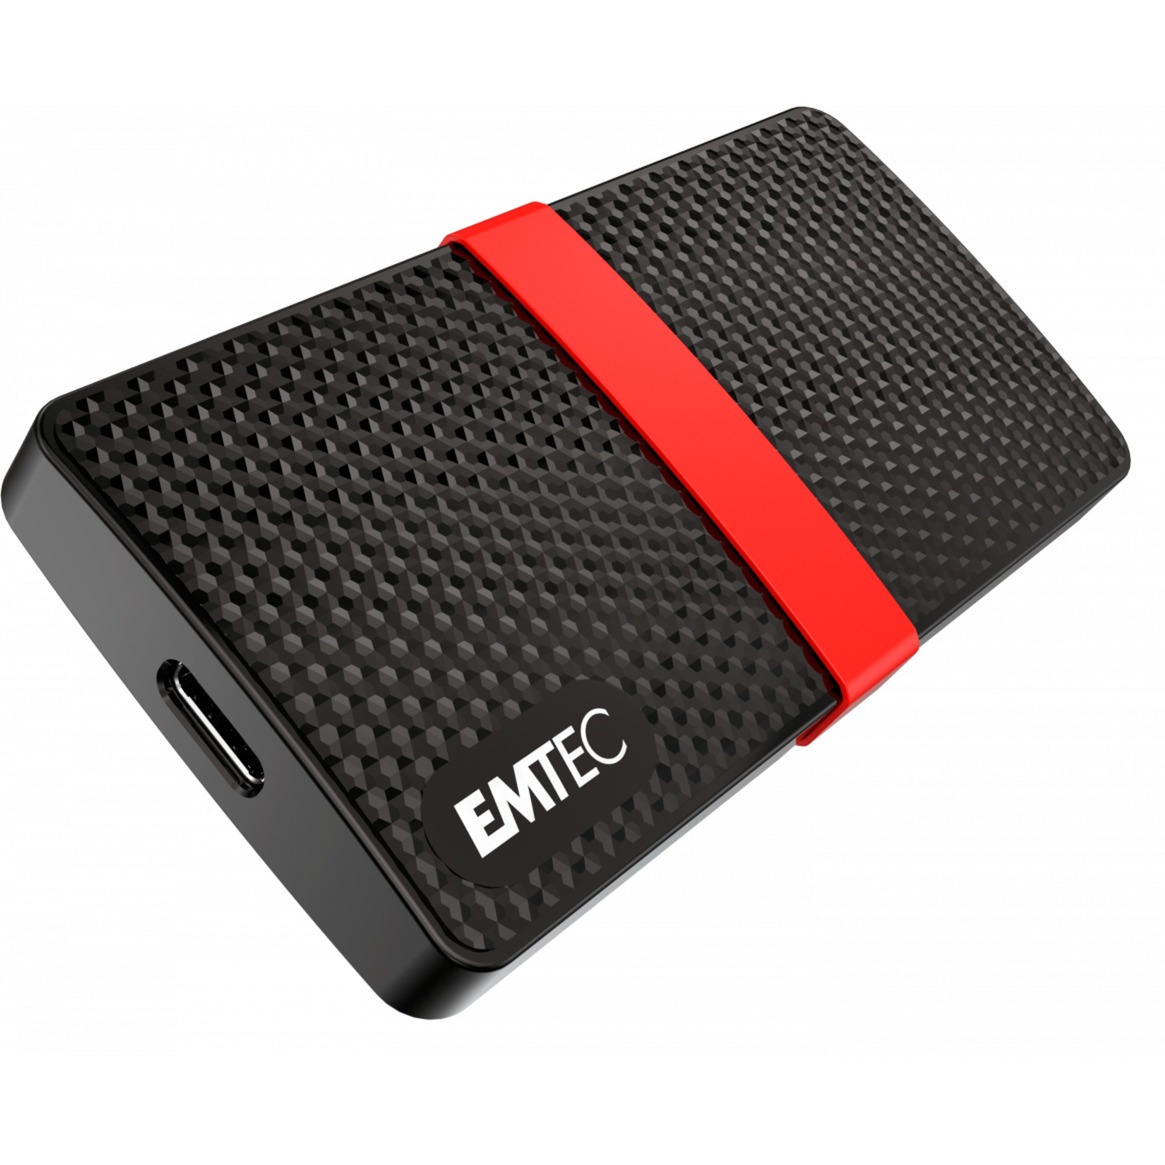 Image of Alternate - X200 Portable SSD 128 GB, Externe SSD online einkaufen bei Alternate